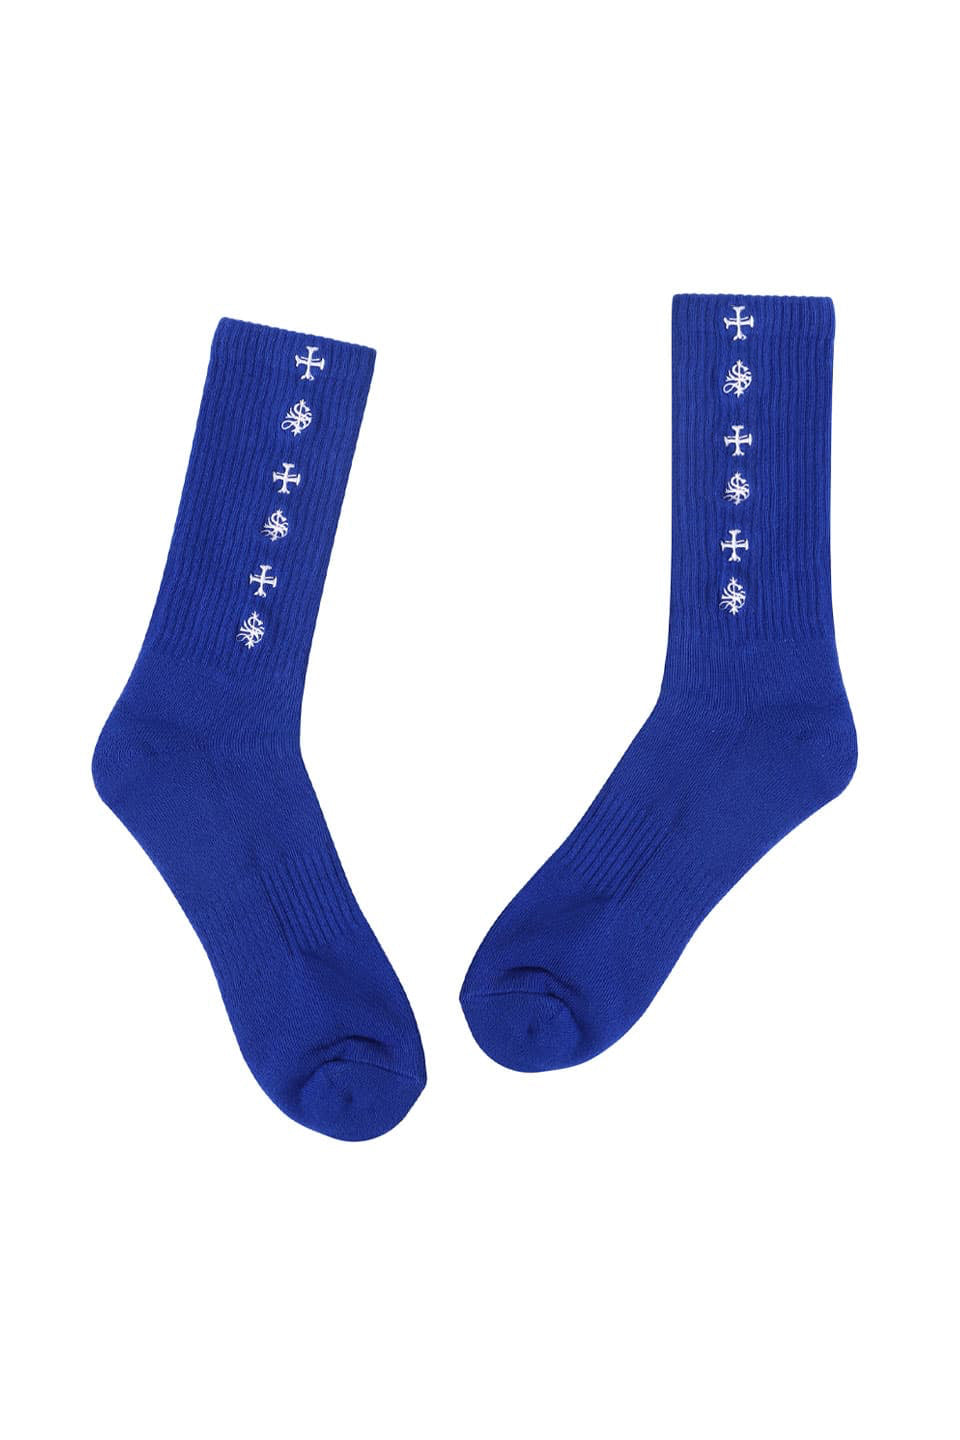 Cross Socks